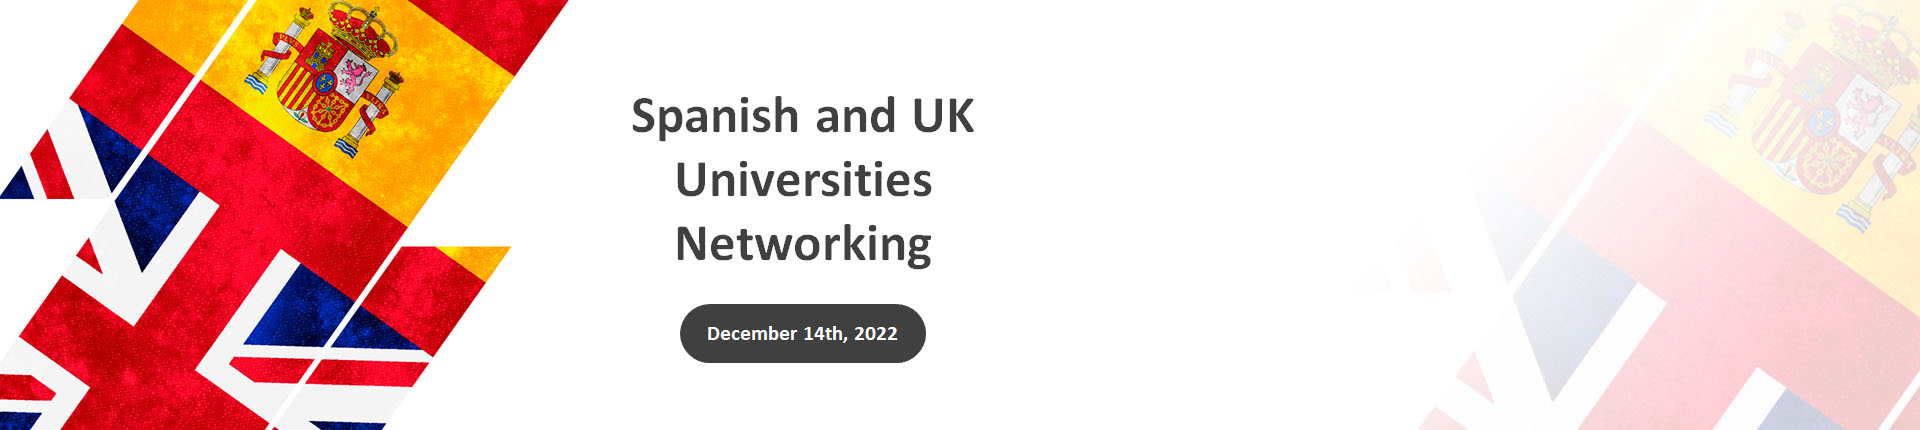 Colaboración entre universidades españolas y británicas